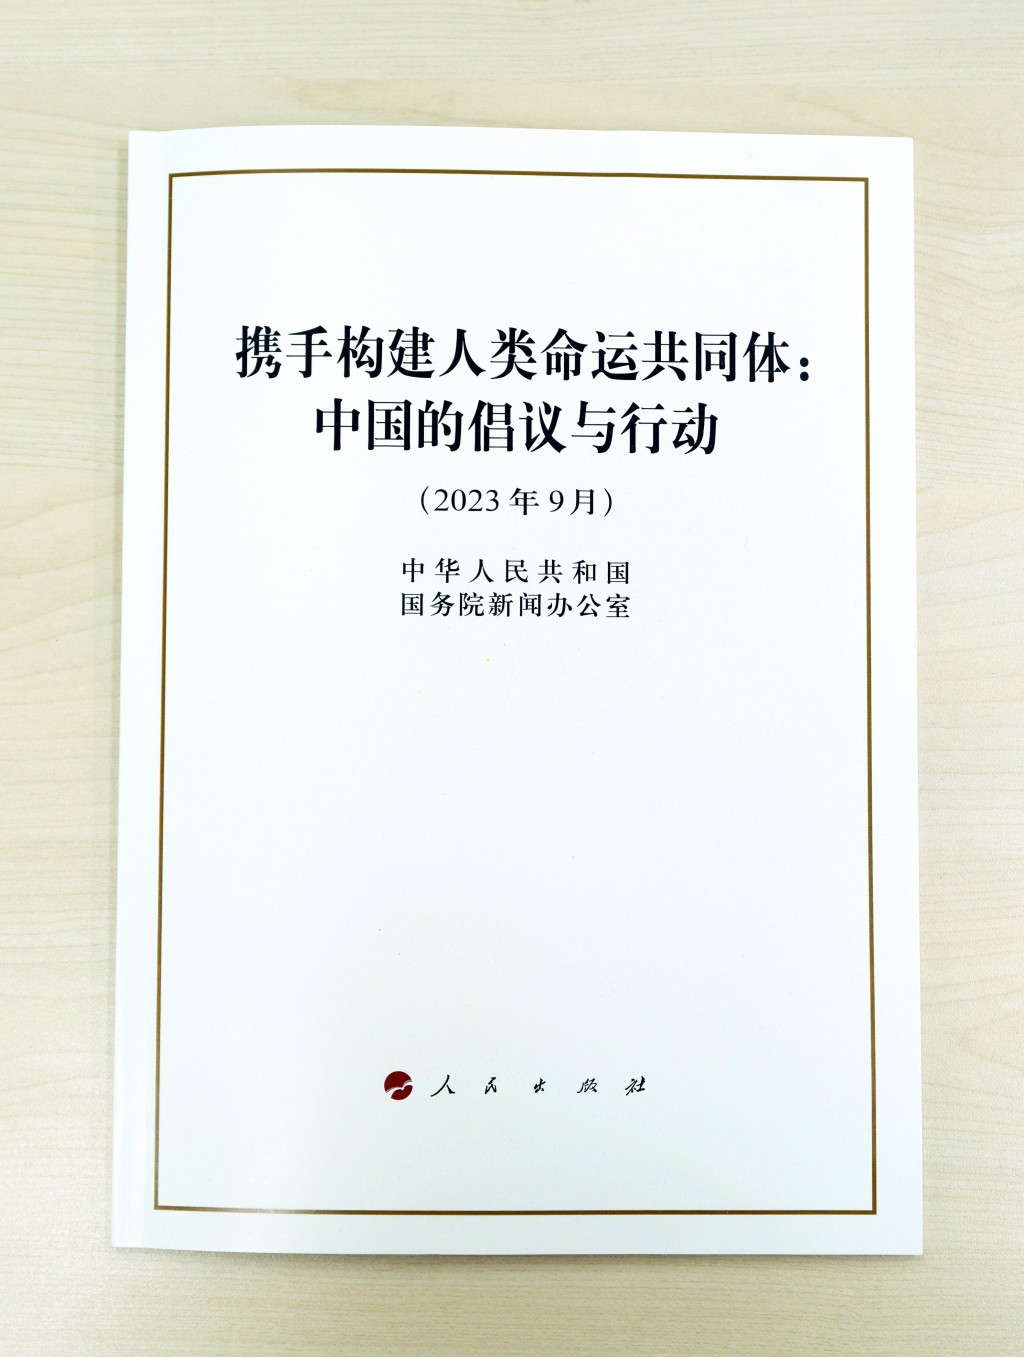 國務院新聞辦公室發布《攜手構建人類命運共同體：中國的倡議與行動》白皮書。新華社